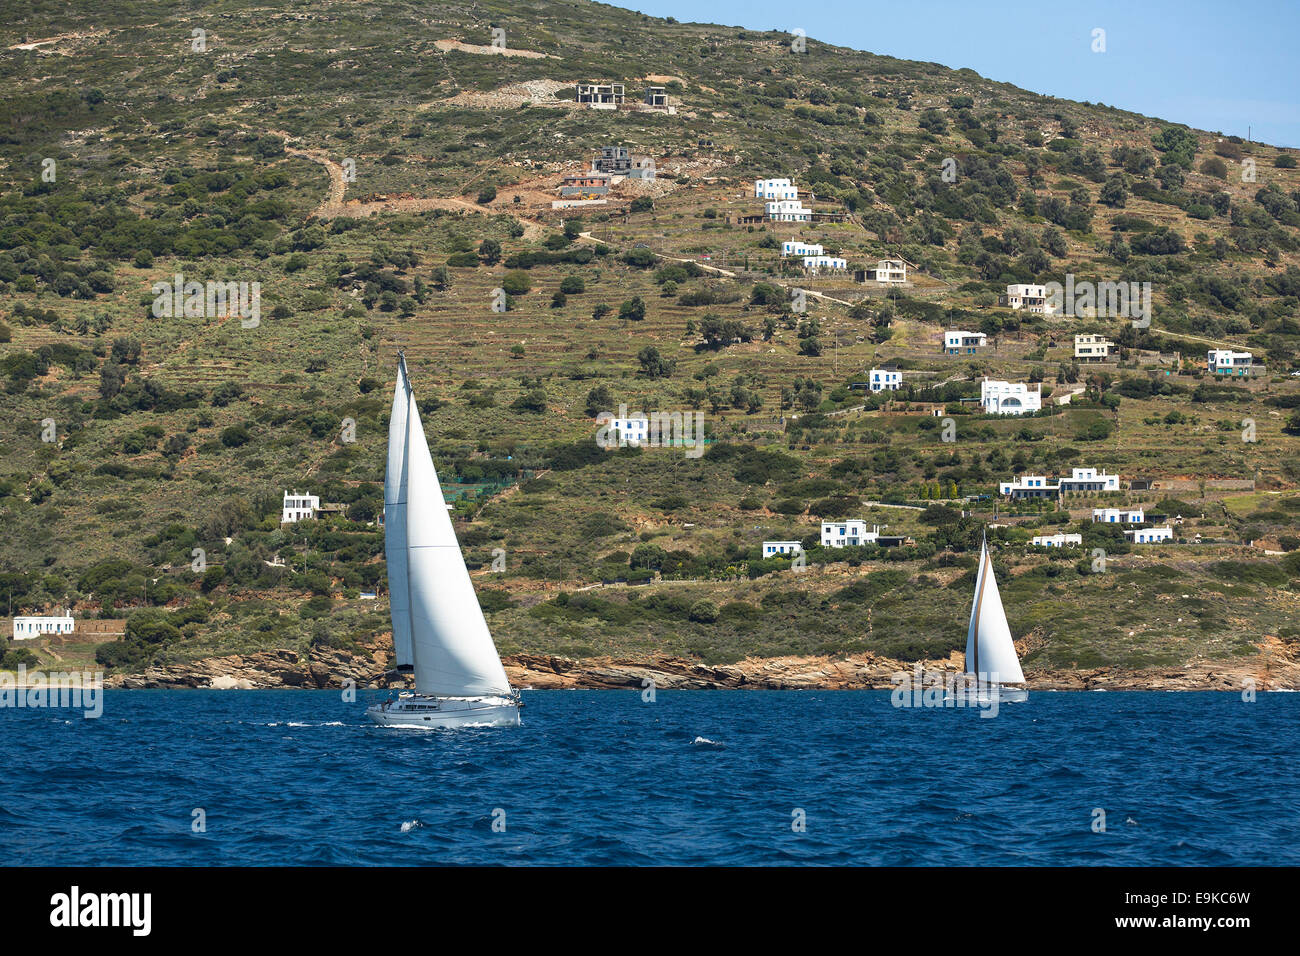 Segeln Regatta in Ägäis vor der Küste der griechischen Inselns. Yachting. Stockfoto